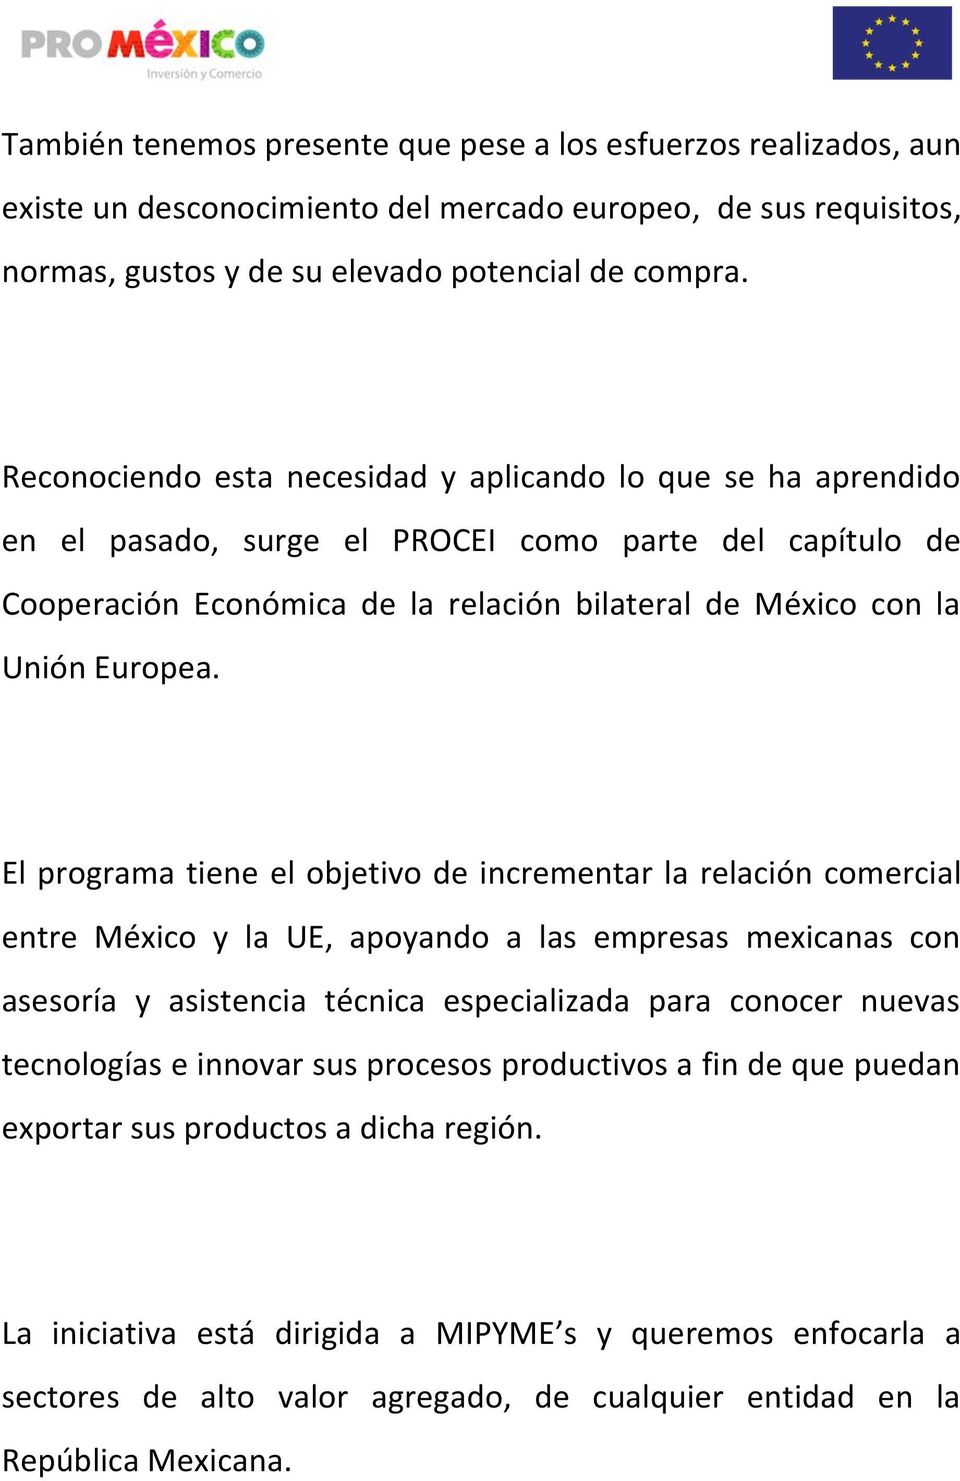 El programa tiene el objetivo de incrementar la relación comercial entre México y la UE, apoyando a las empresas mexicanas con asesoría y asistencia técnica especializada para conocer nuevas